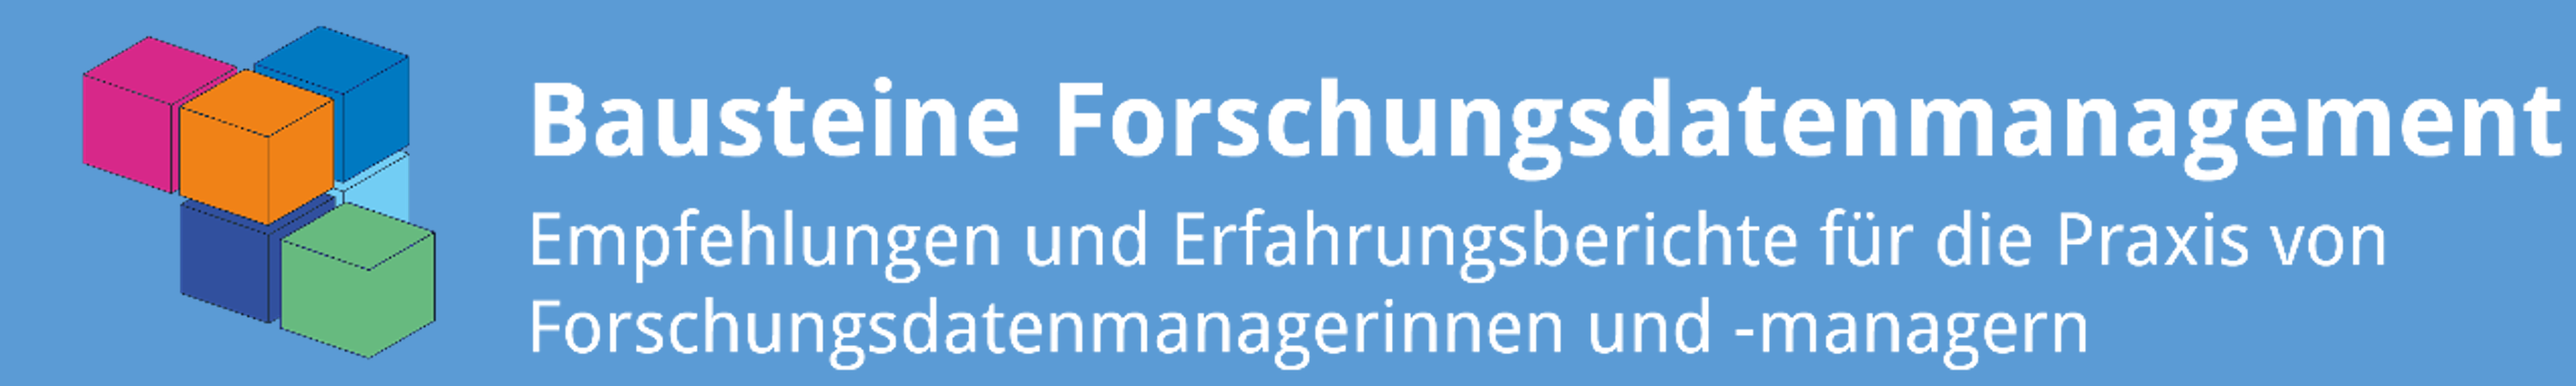 Bausteine Forschungsdatenmanagement Logo